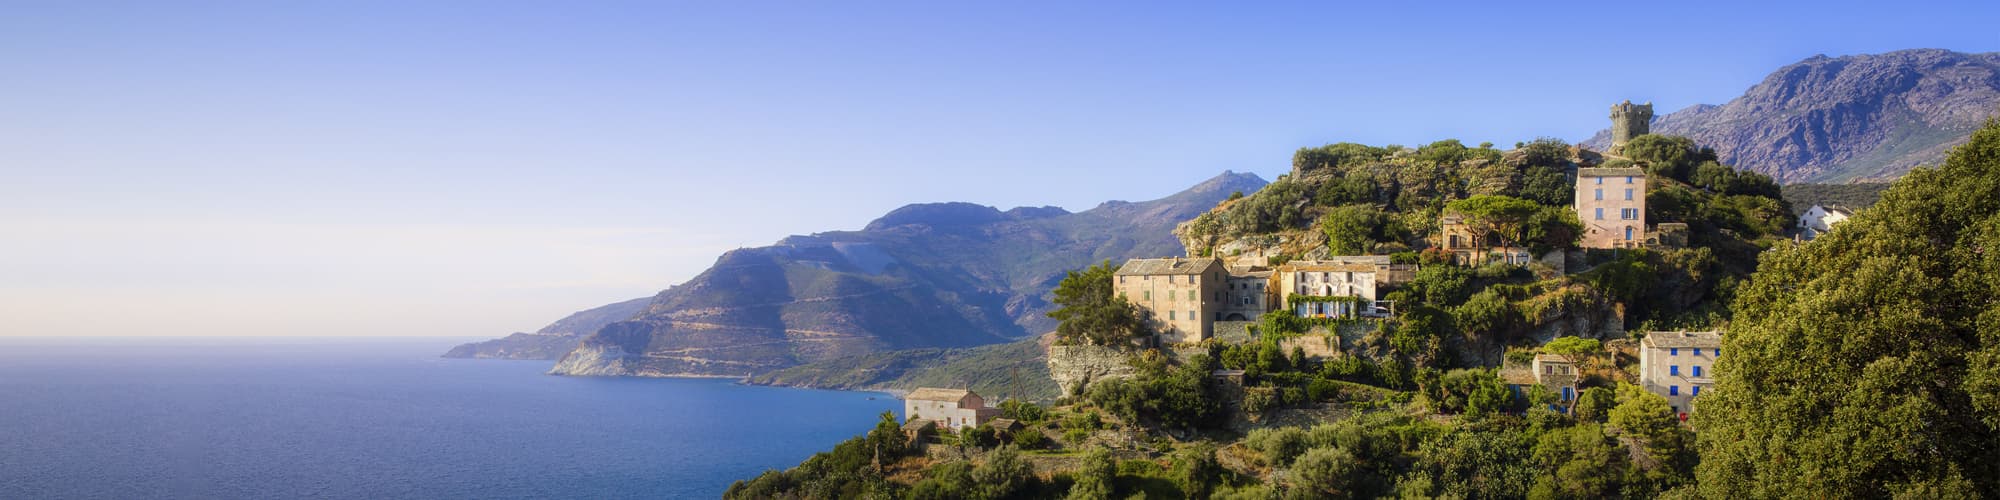 Trek et randonnée en Corse © RolfSt